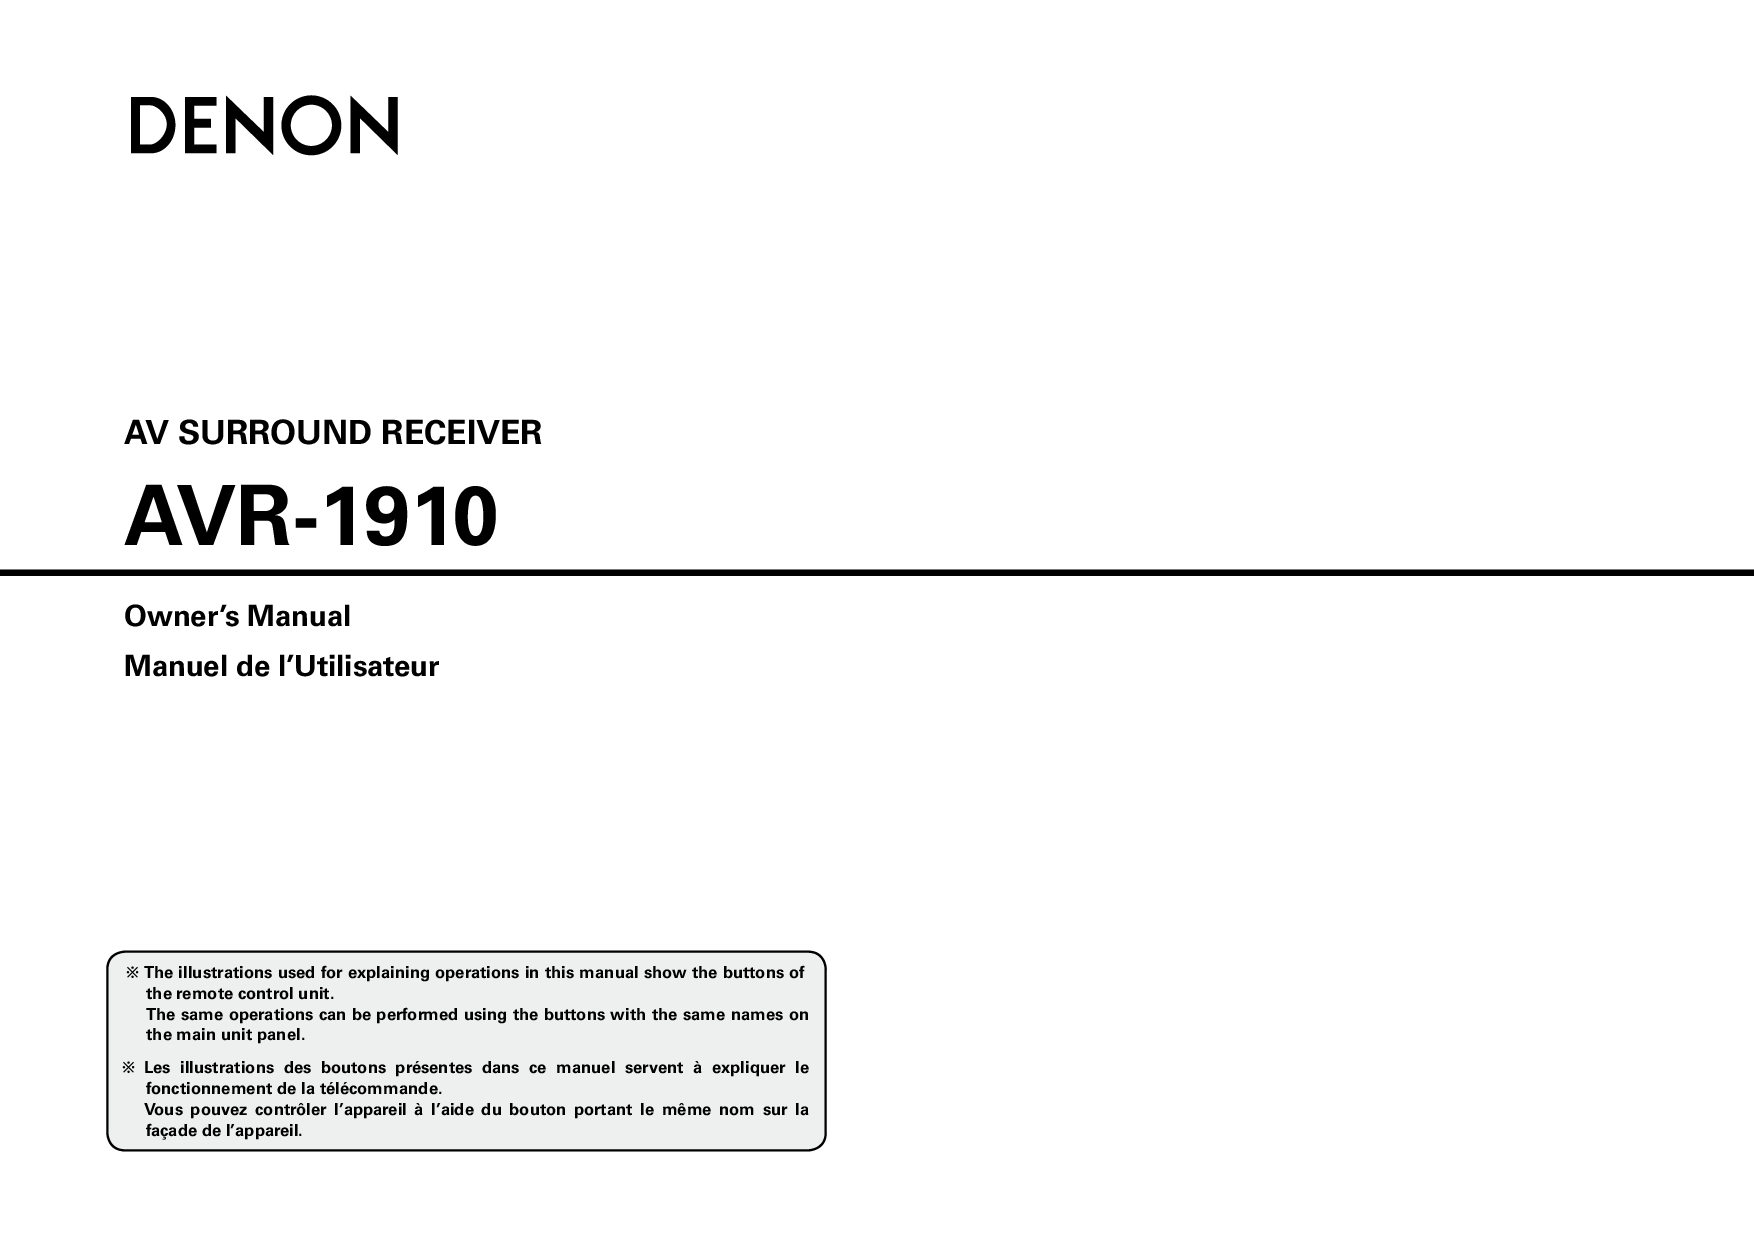 Denon AVR-1910 User Manual